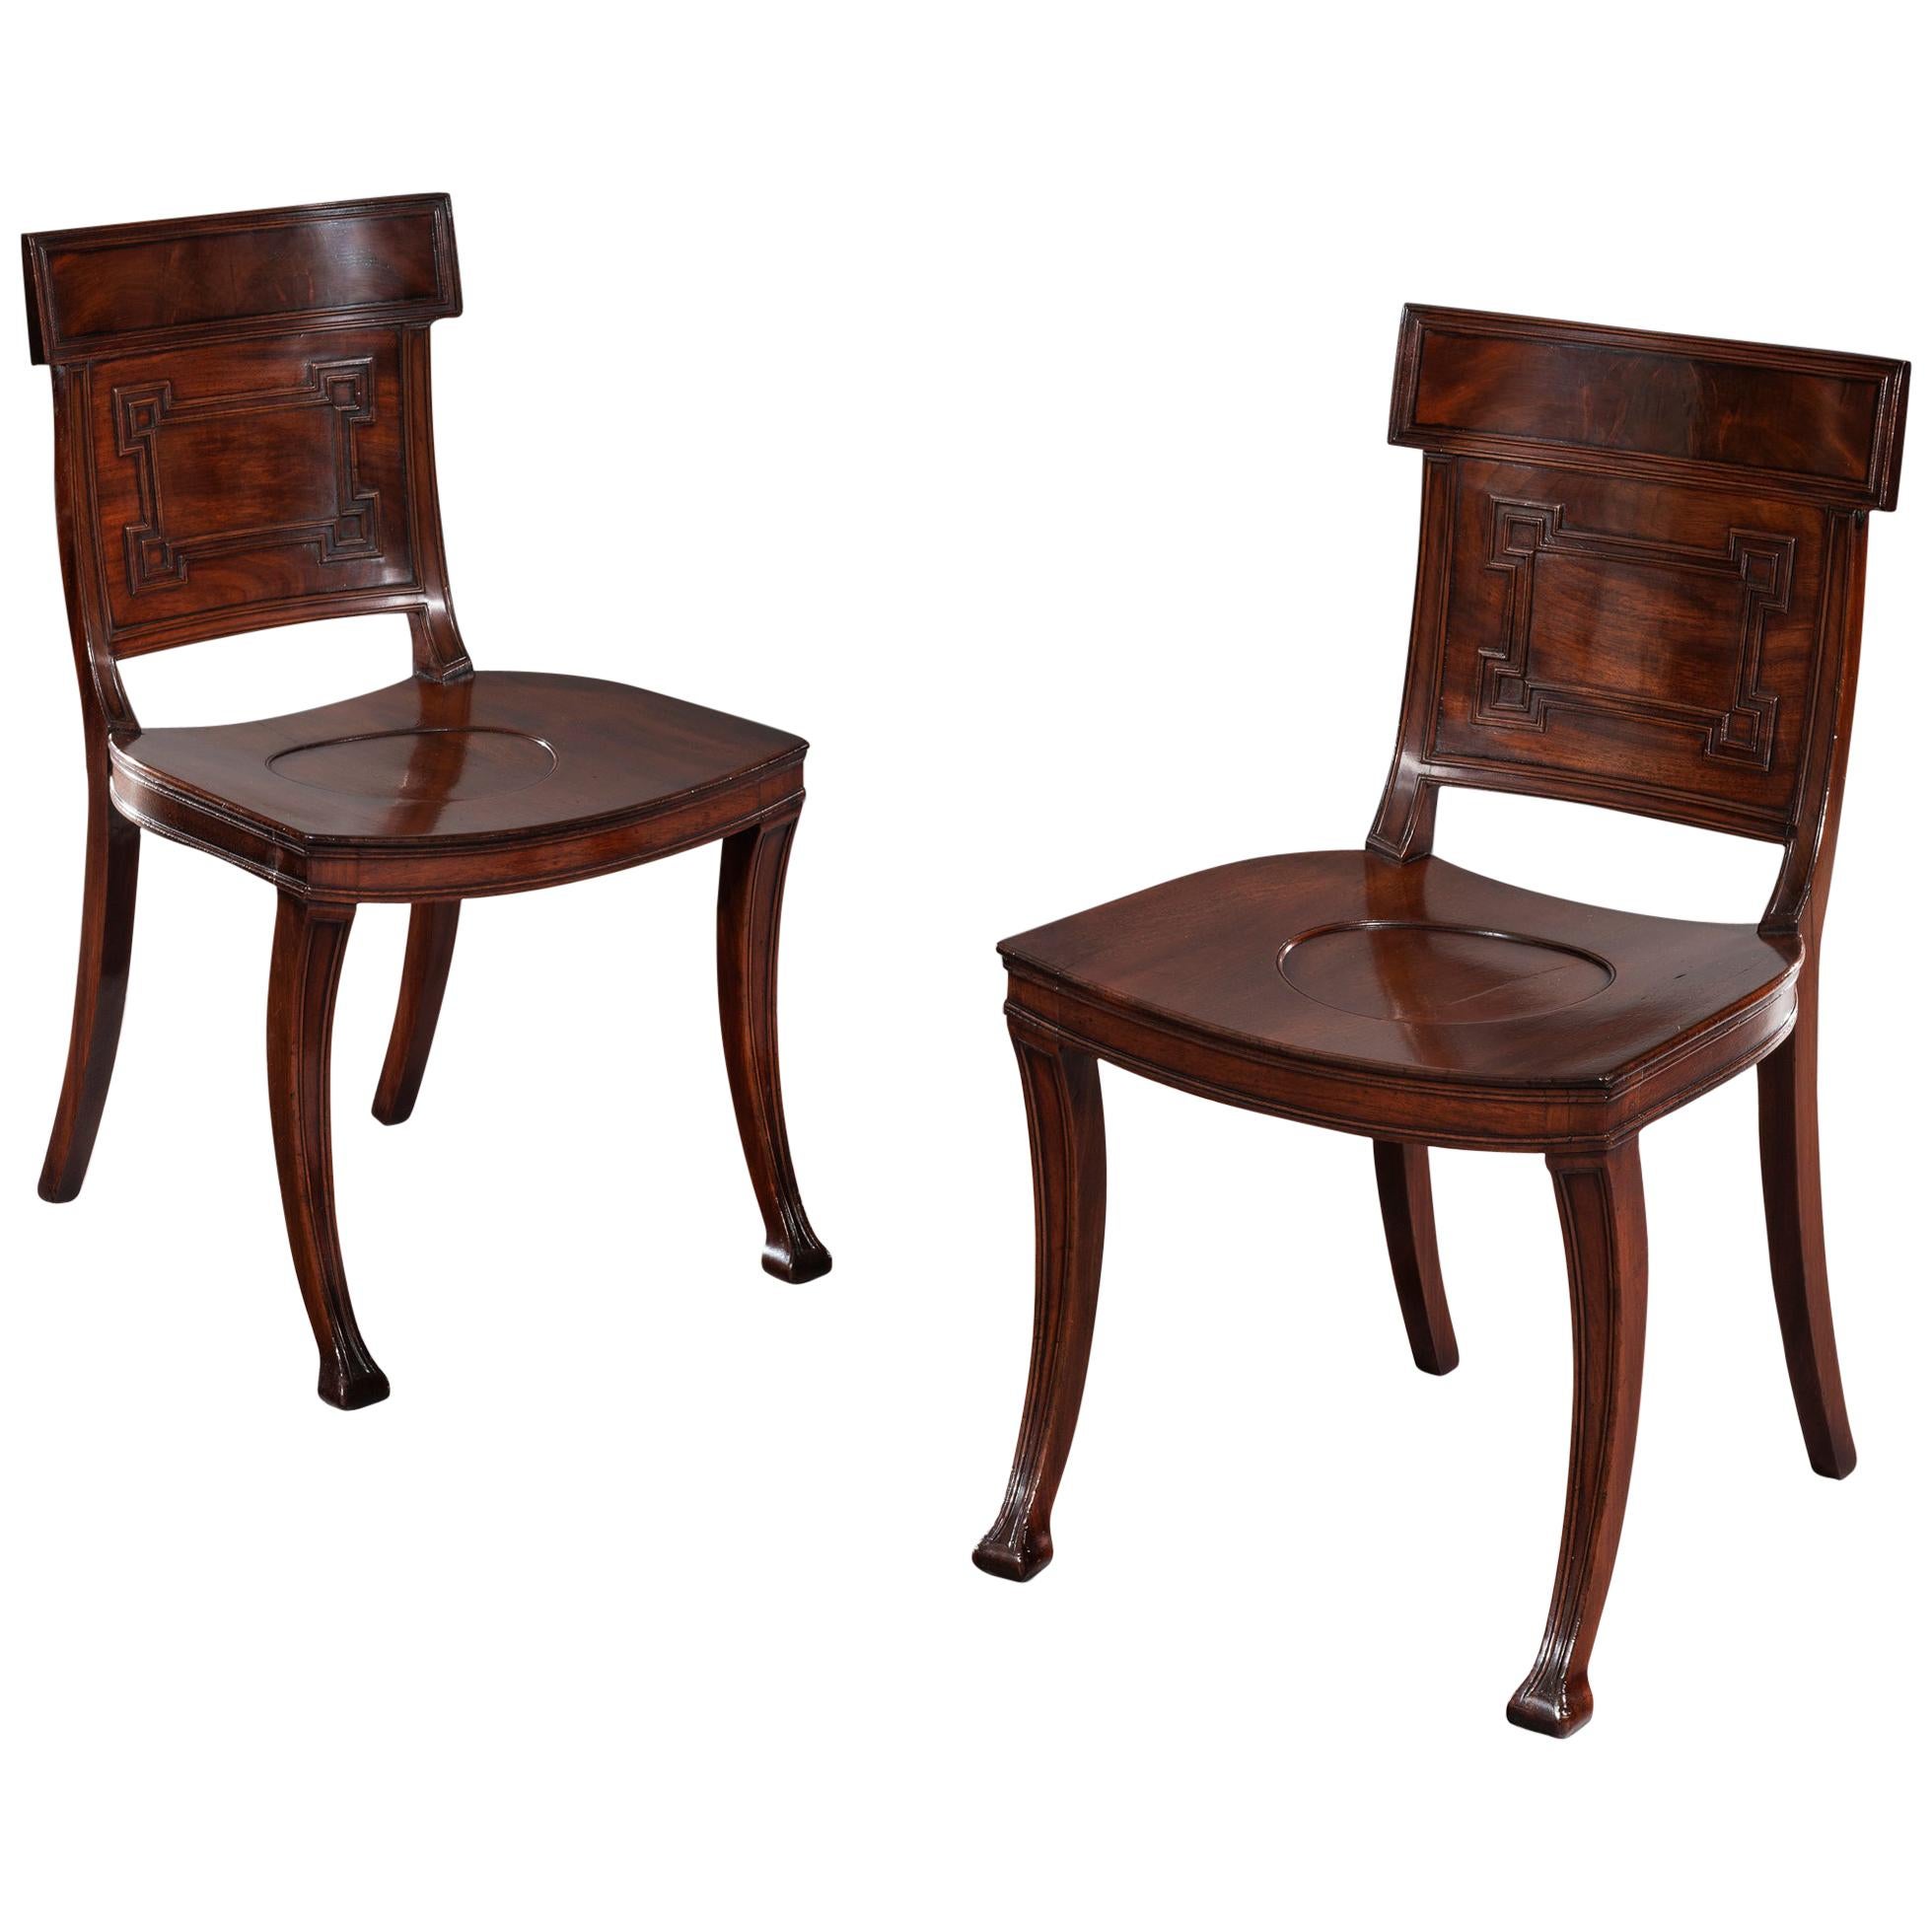 Regency Period Mahogany Hall Chairs Made by Eldward, Marsh & Tatham